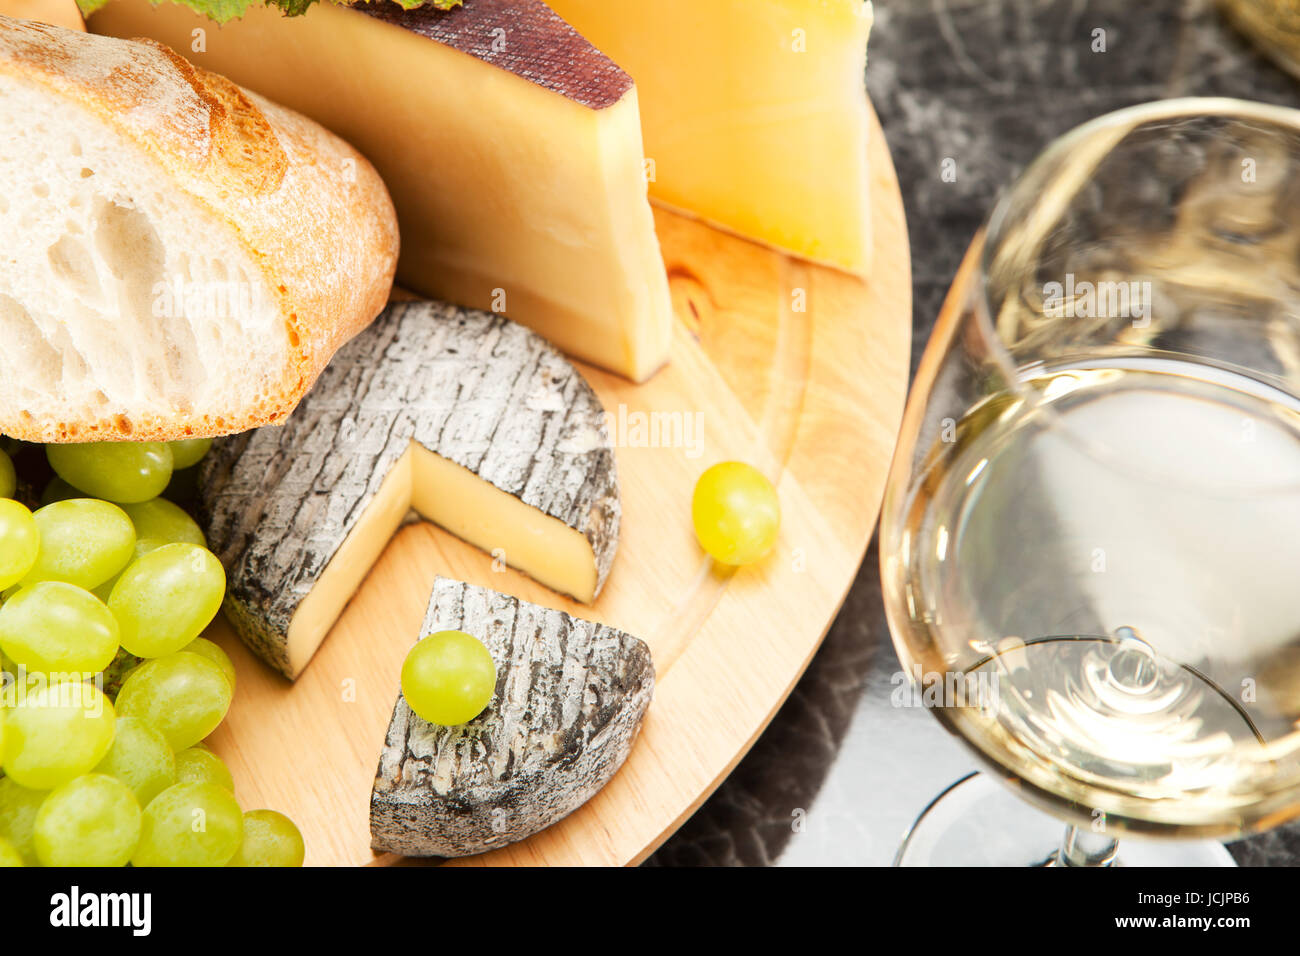 Weisswein mit Käseplatte Trauben und Weissbrot Foto Stock